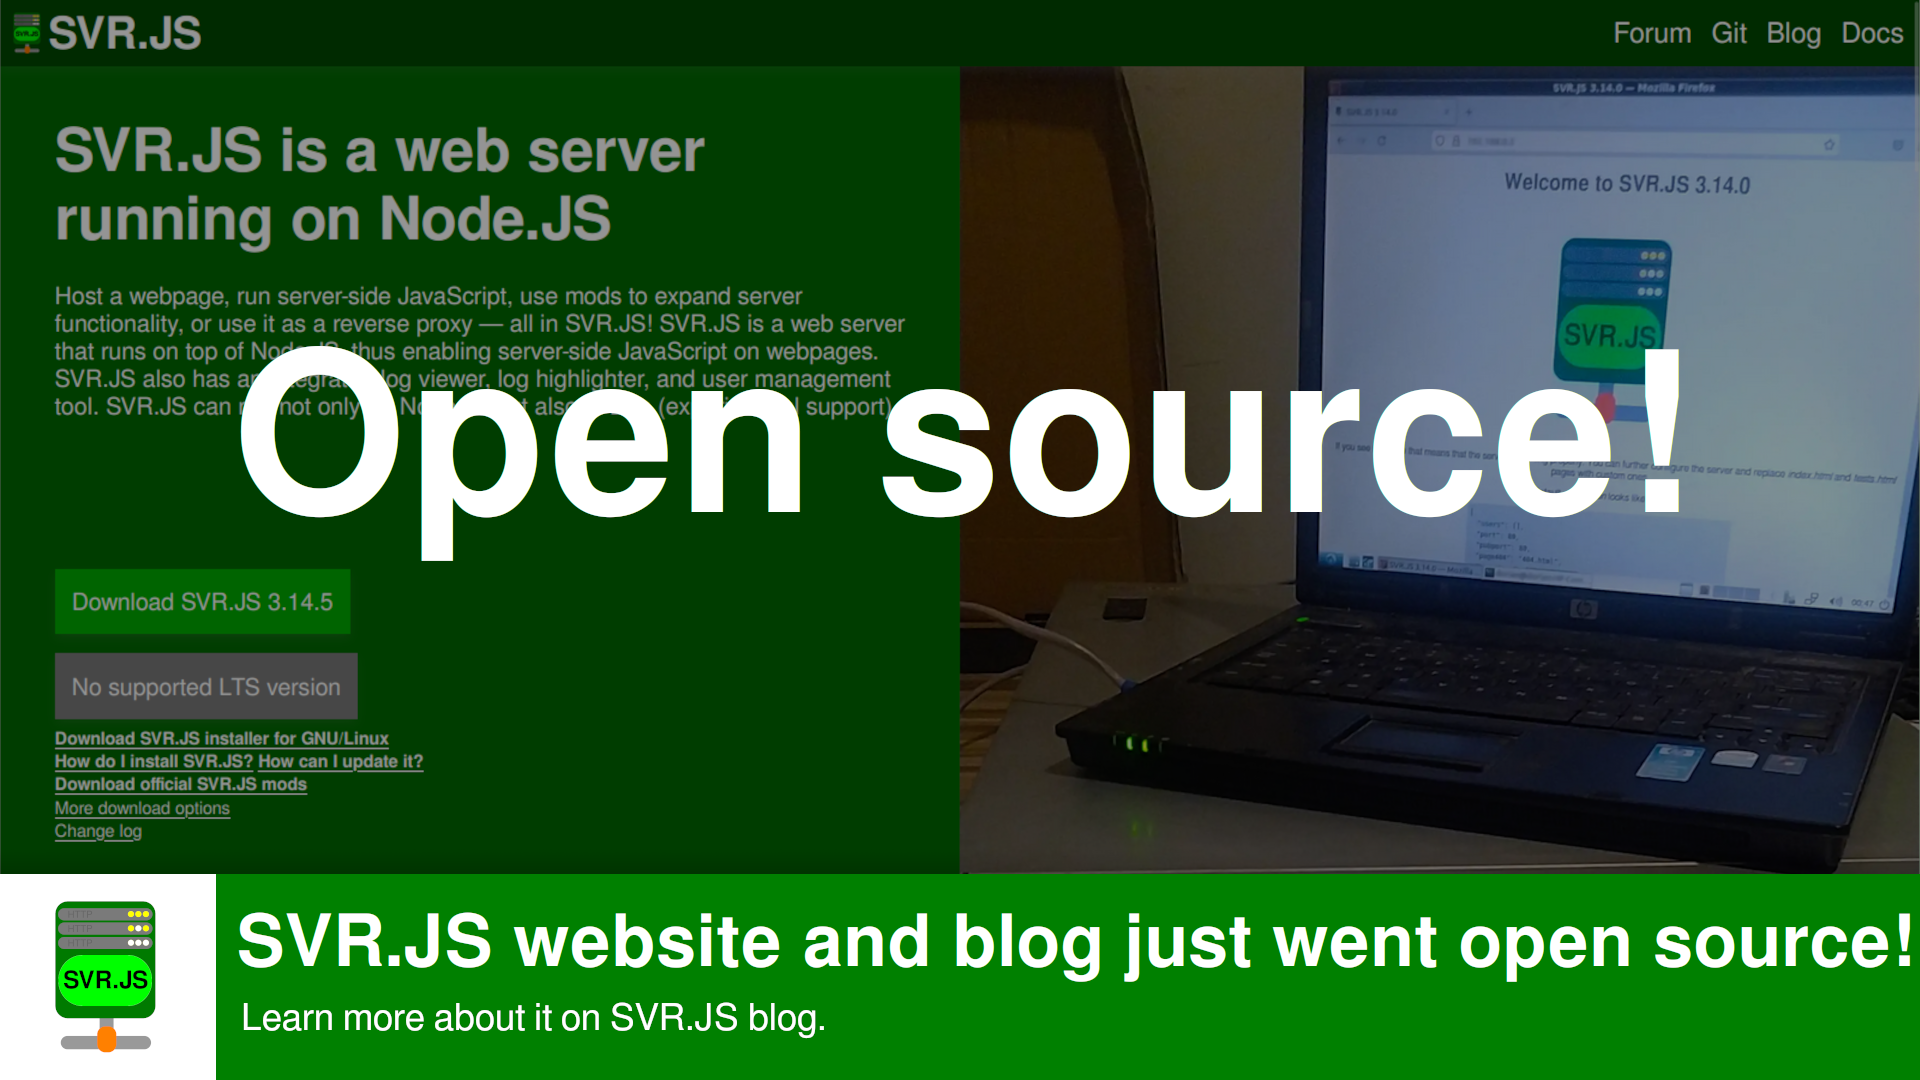 SVR.JS website and blog just went open source!